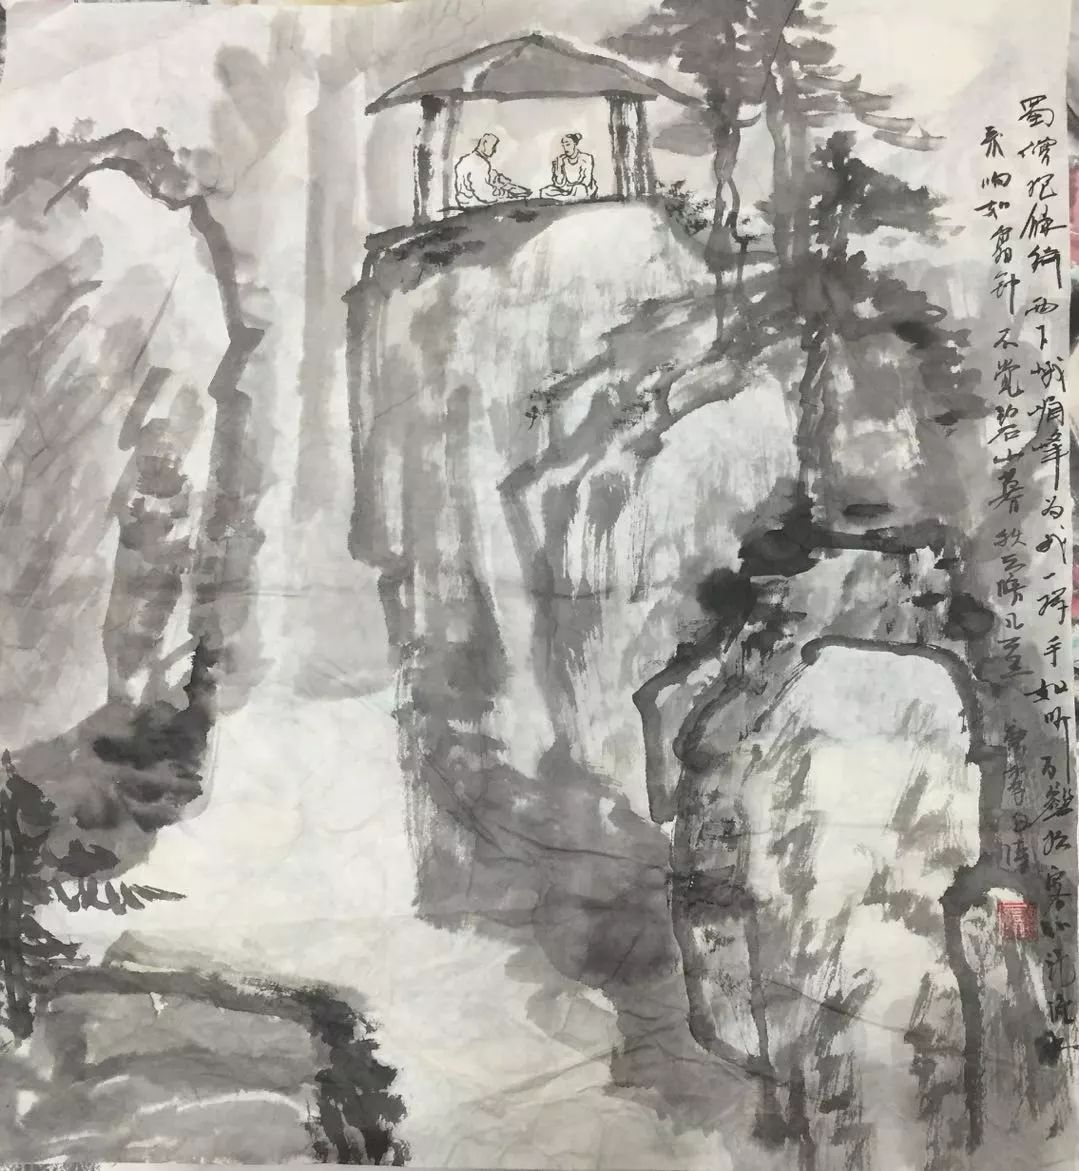 何秋泉 : 古风堂特约画家,1942年生于湖北武汉,68年毕业于湖北美术